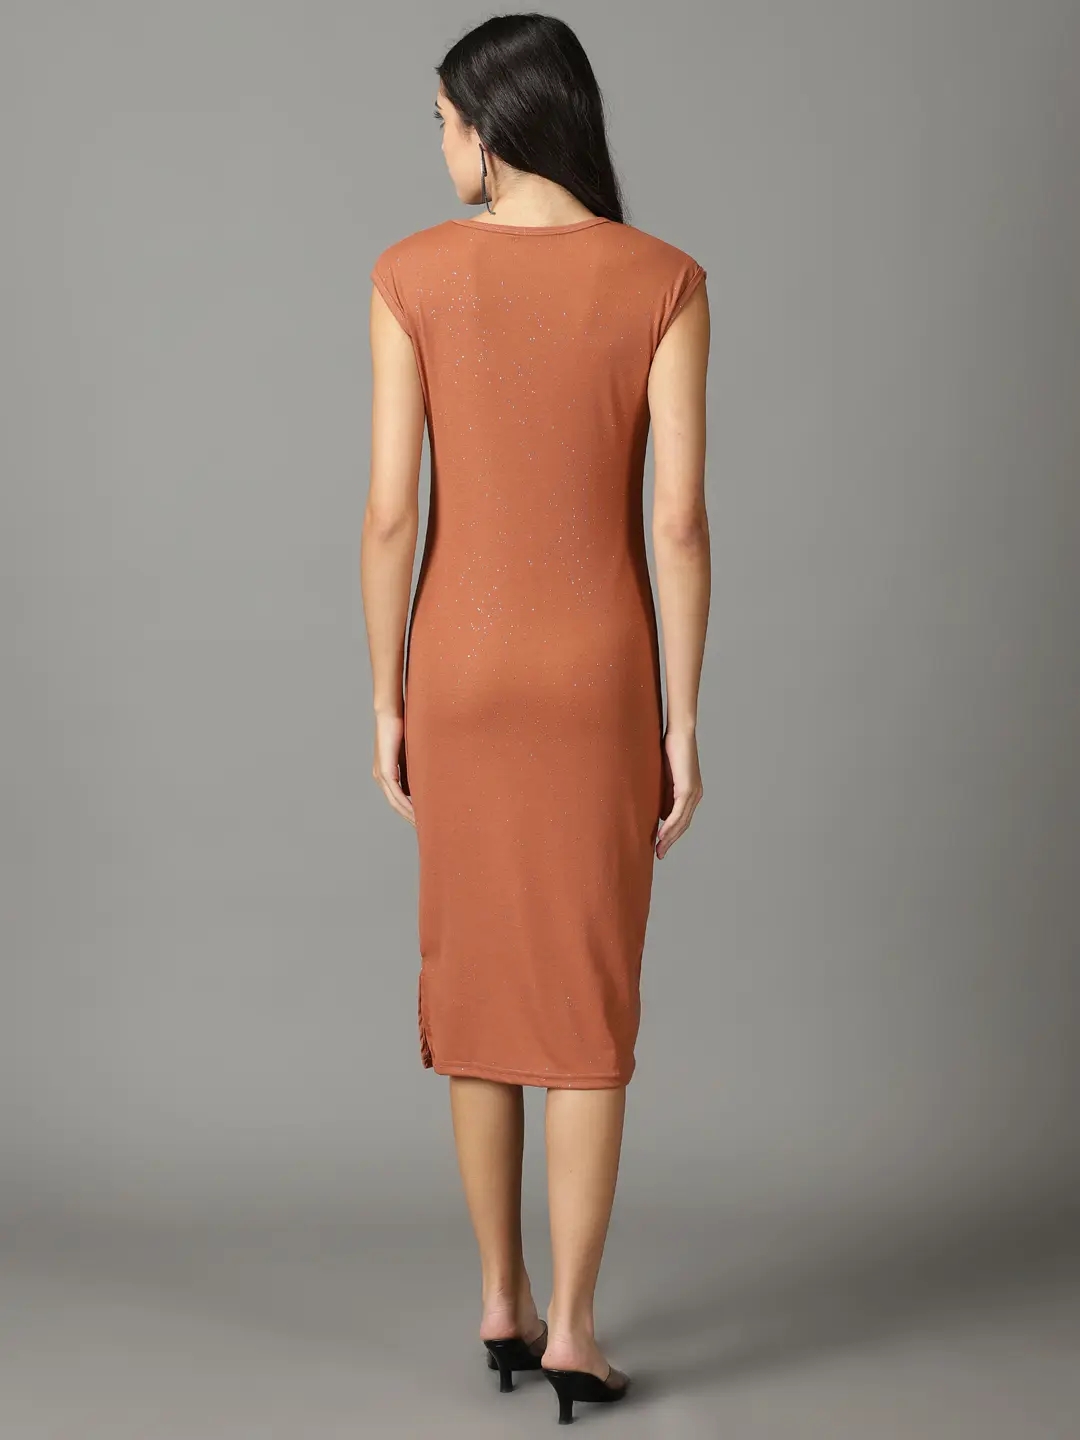 Showoff | SHOWOFF Women Rust Embellished Round Neck Sleeveless Midi Bodycon Dress 3